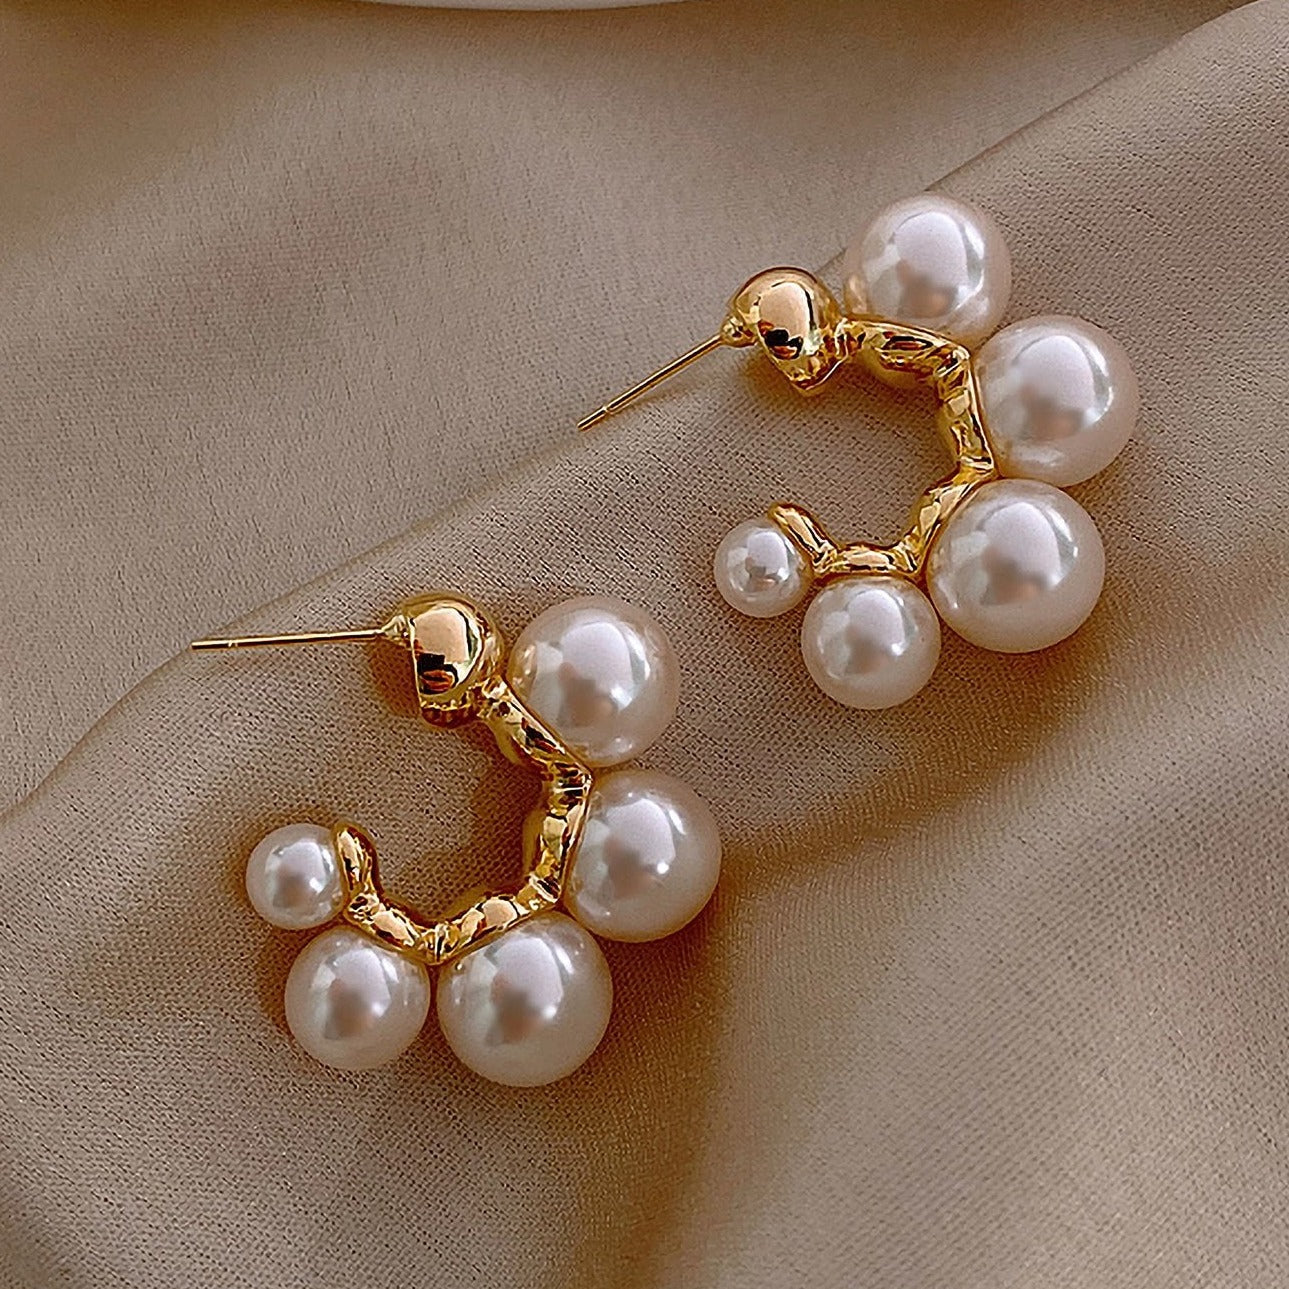 4 pearls Earrings